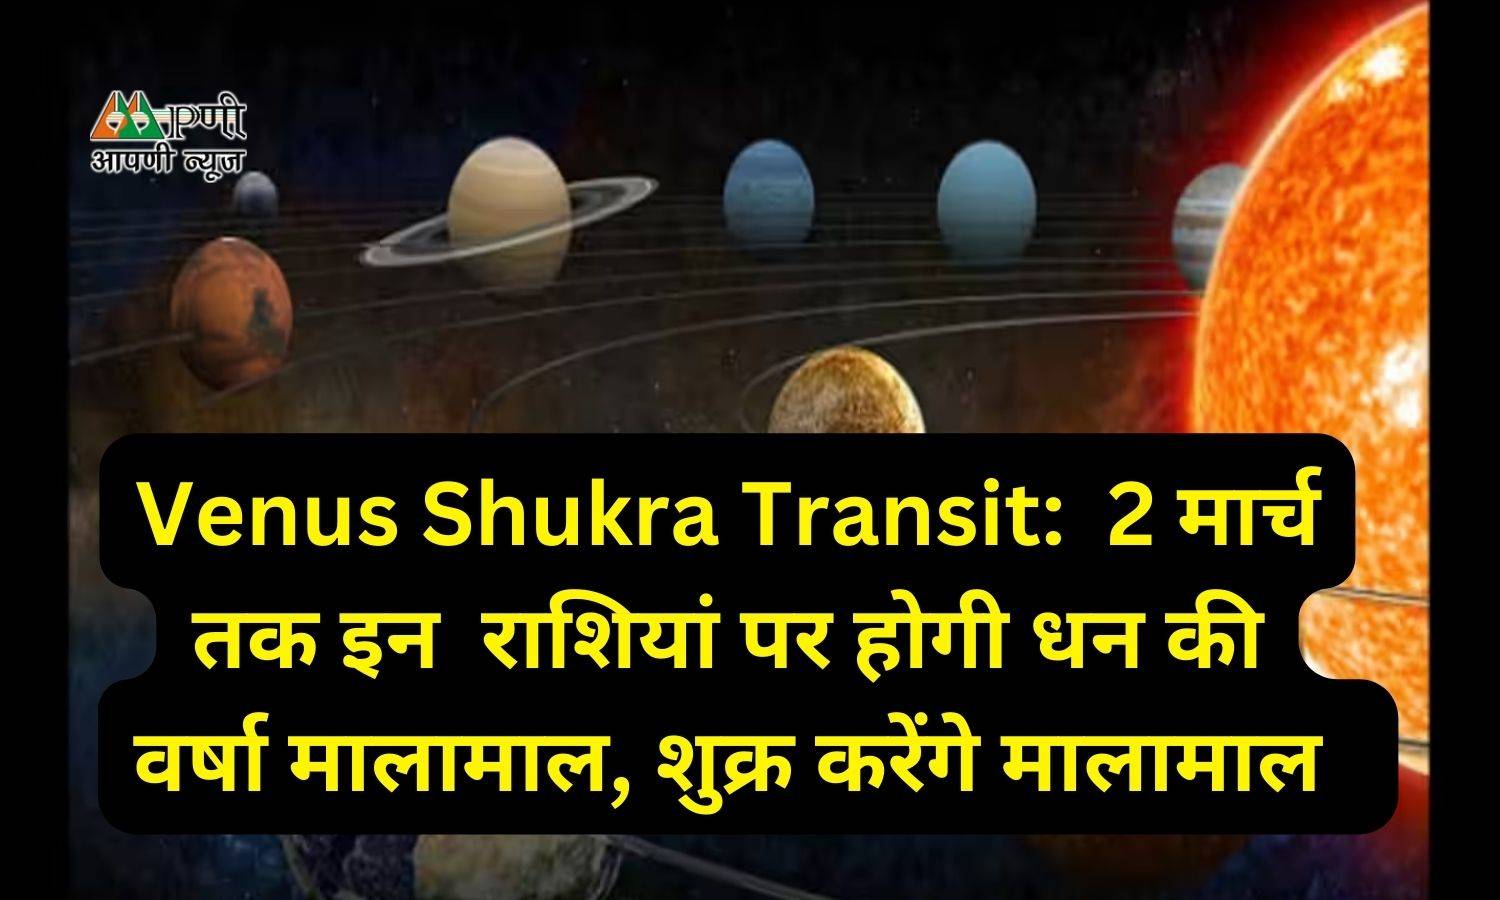 Venus Shukra Transit:  2 मार्च तक इन  राशियां पर होगी धन की वर्षा मालामाल, शुक्र करेंगे मालामाल